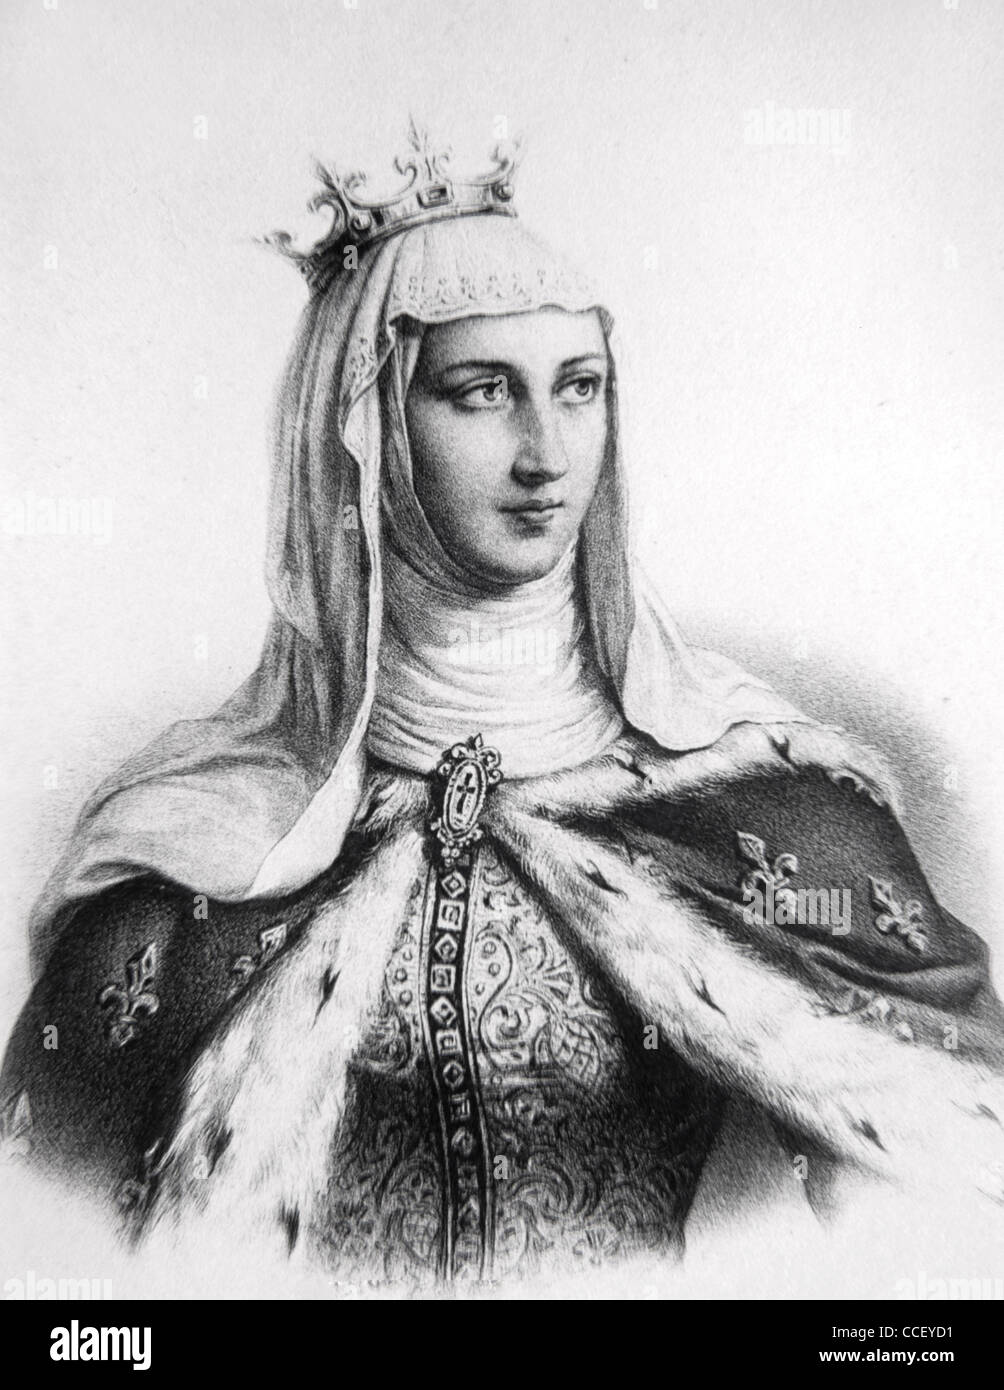 Ritratto di Margherita di Provenza (1221-1295) Regina di Francia come Consorte di Re Luigi IX, o San Luigi. Illustrazione o incisione vintage Foto Stock